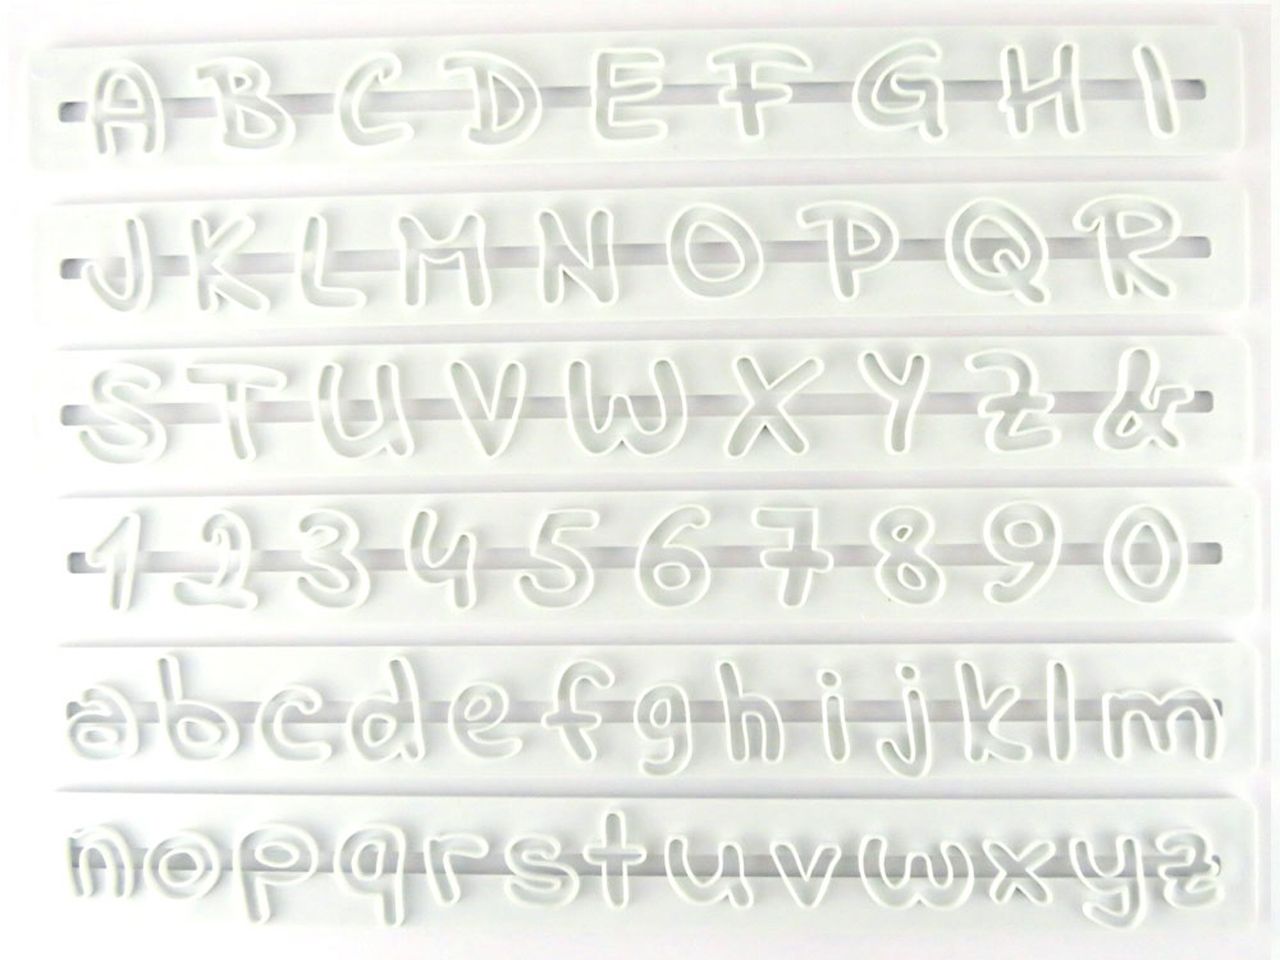 Σετ κουπάτ καλλιγραφικά κεφαλαία και πεζά λατινική αλφάβητος και αριθμοί 0-9 6 τεμ.